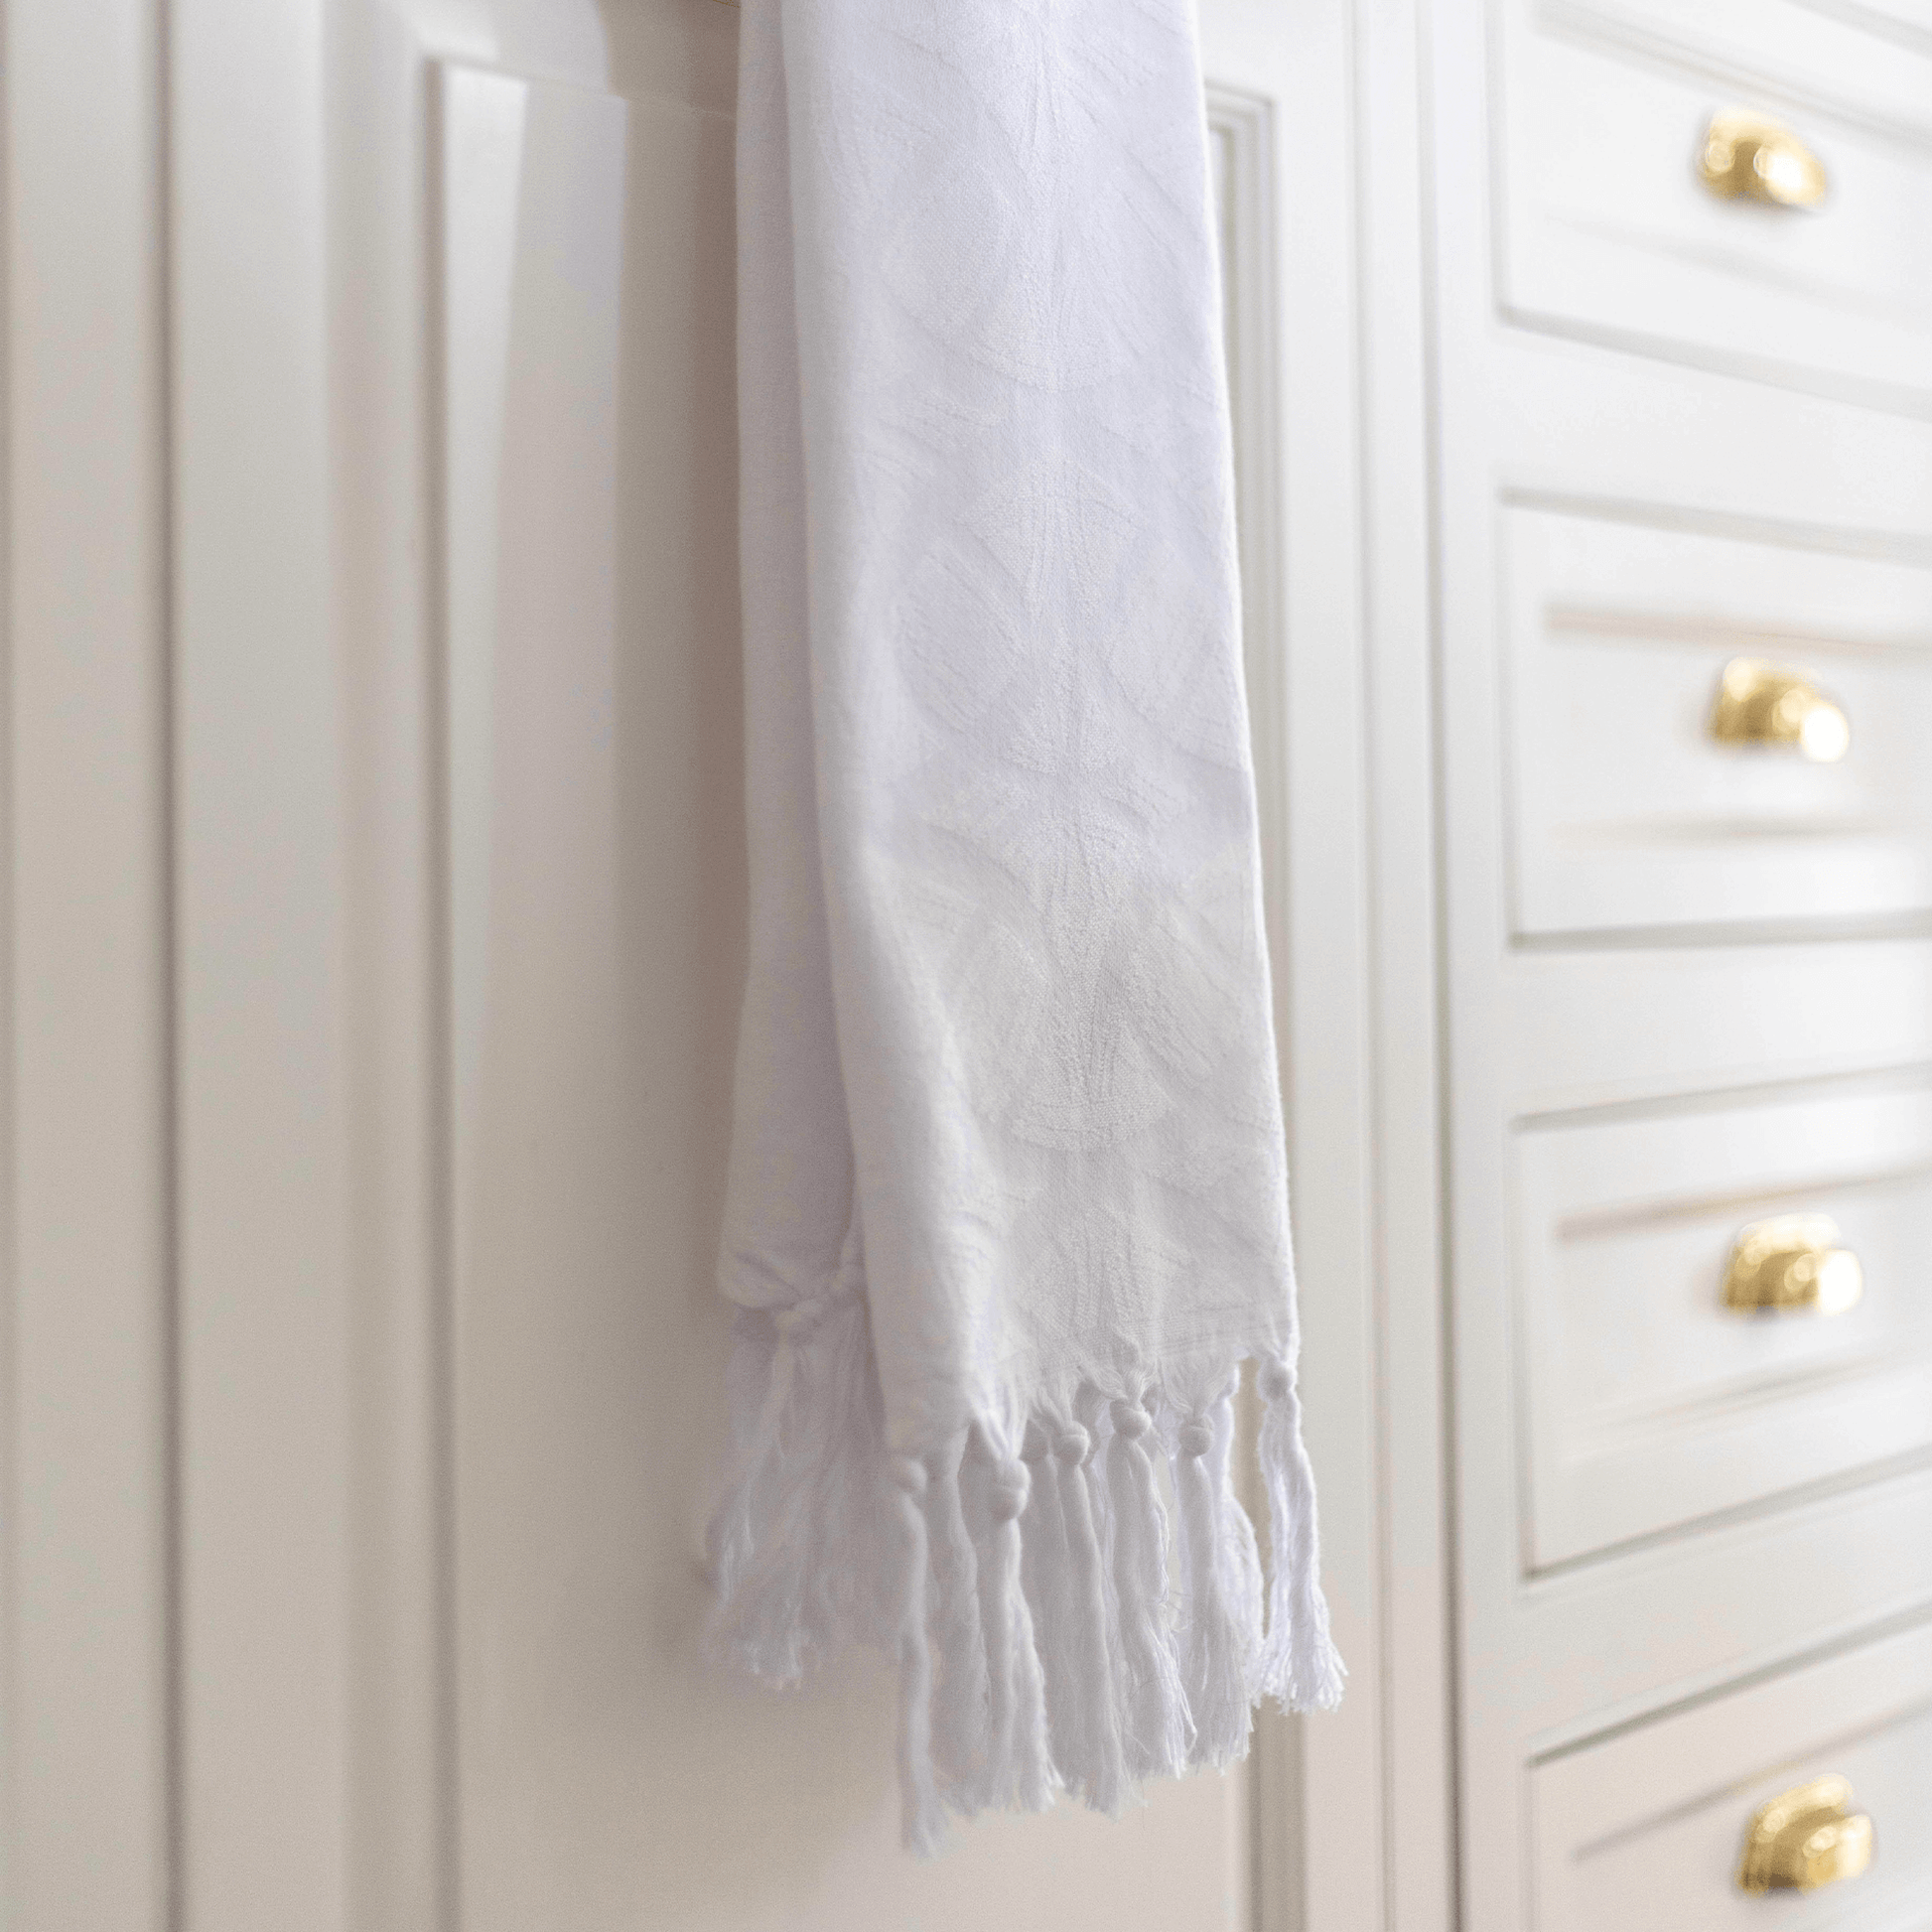  White Turkish towel hanging in kitchen